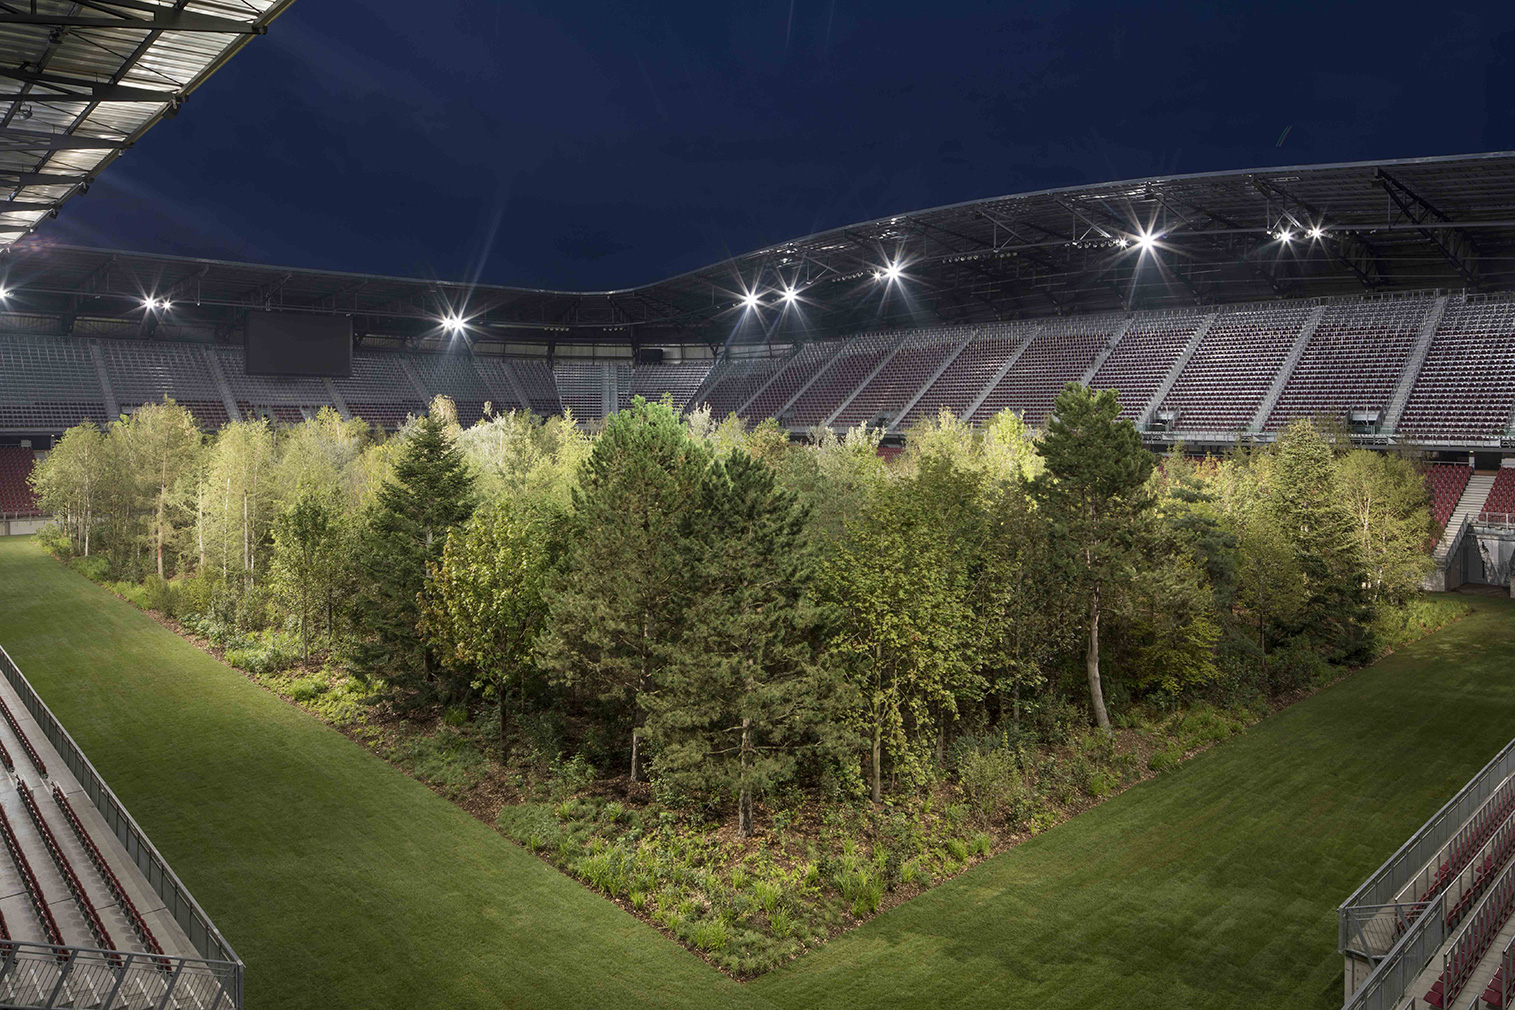 Artist Klaus Littmann fills an Austrian football stadium with 300 trees